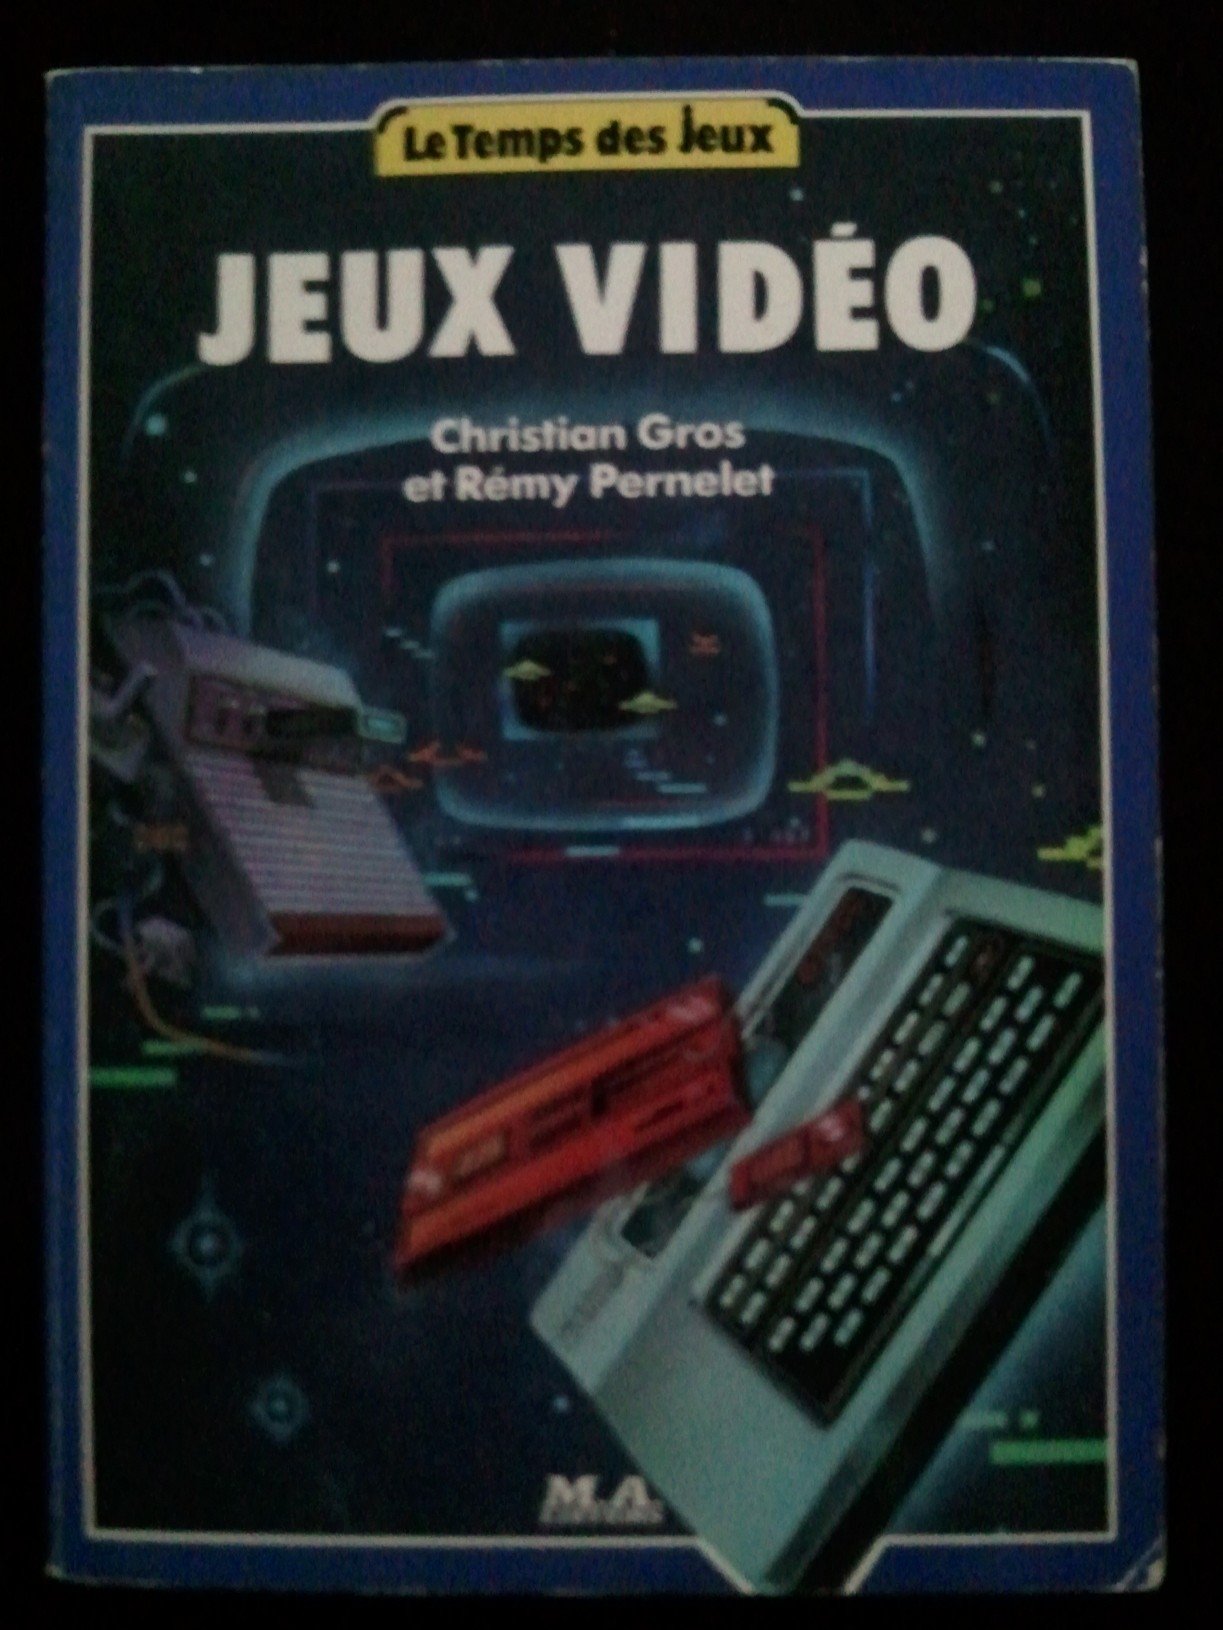 1984 - Livre "le temps des jeux - Jeux Vidéo"